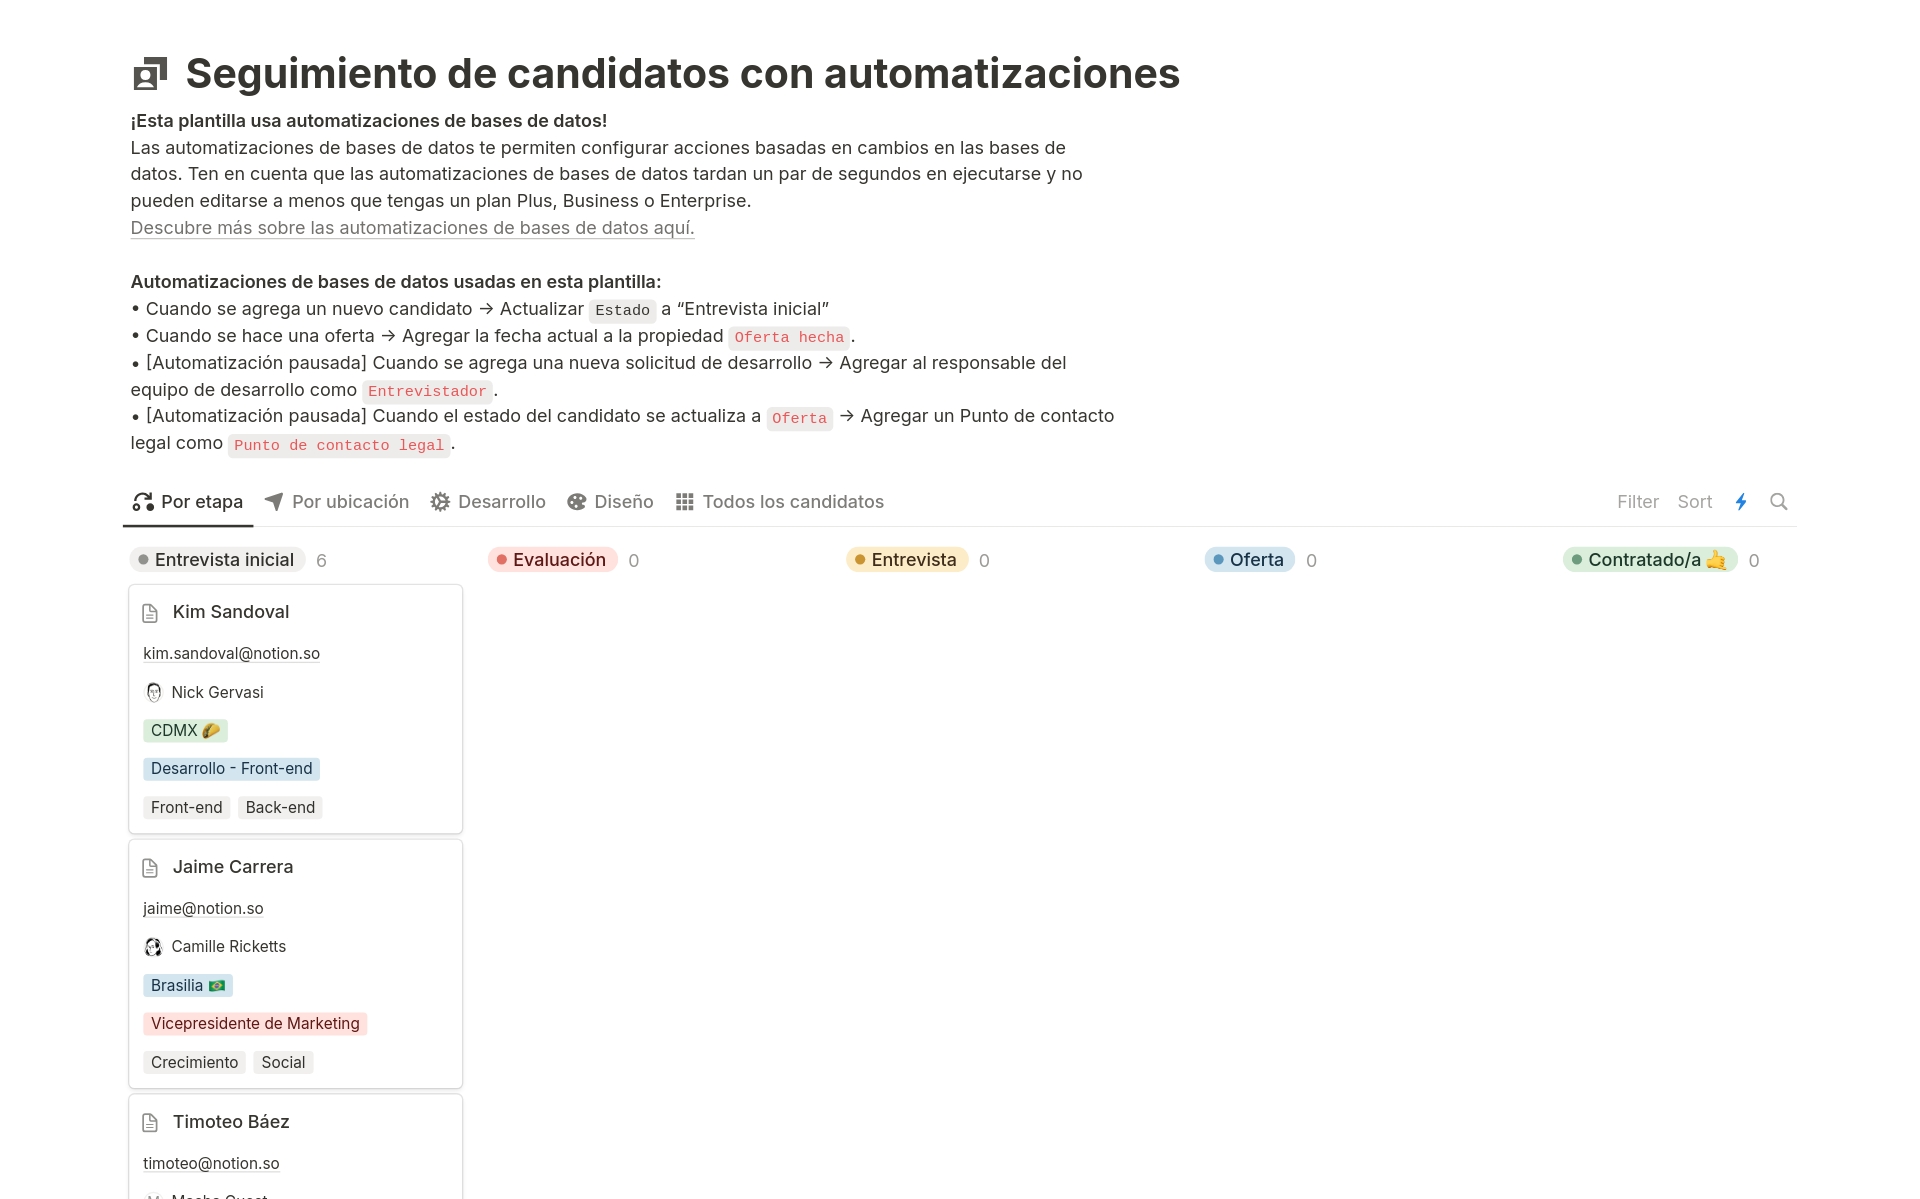 Vista previa de una plantilla para Seguimiento de candidatos con automatizaciones